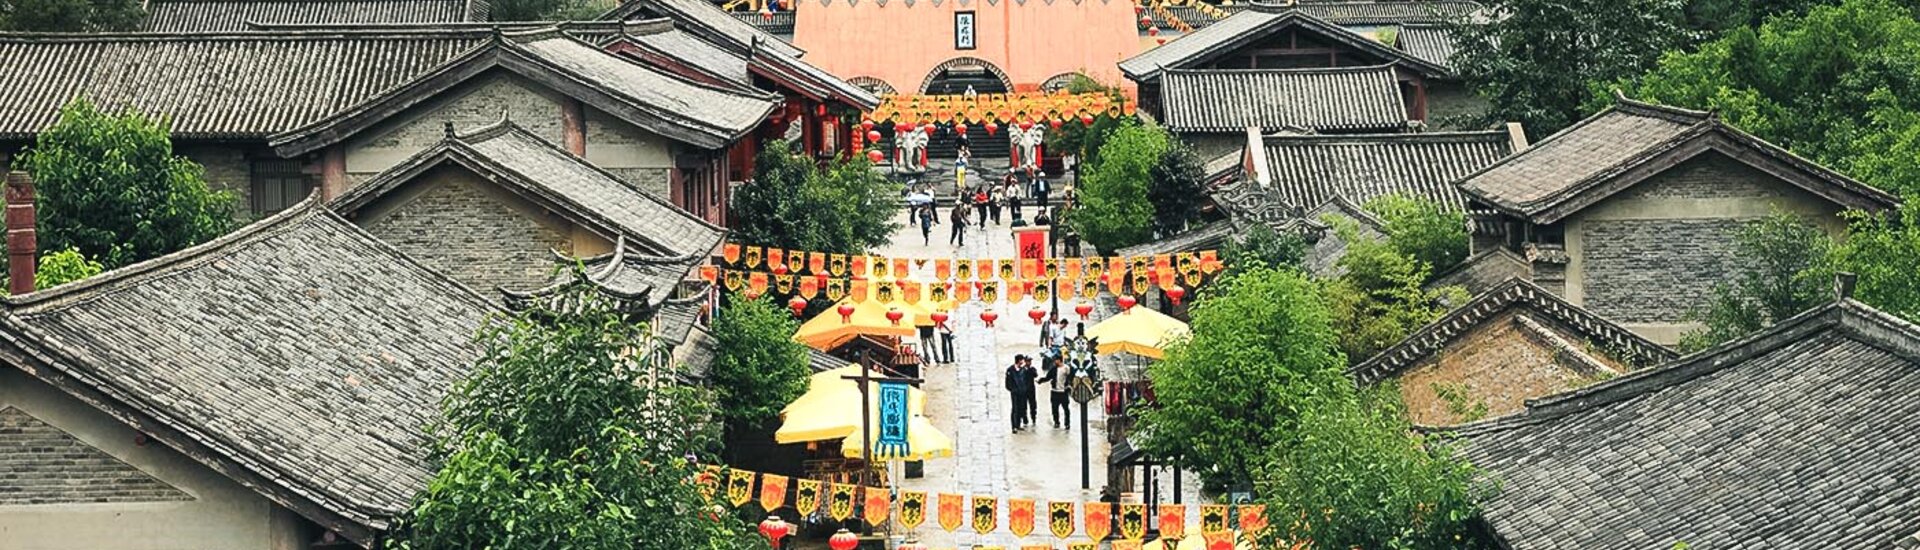 Blick auf die Altstadt von Dali in China